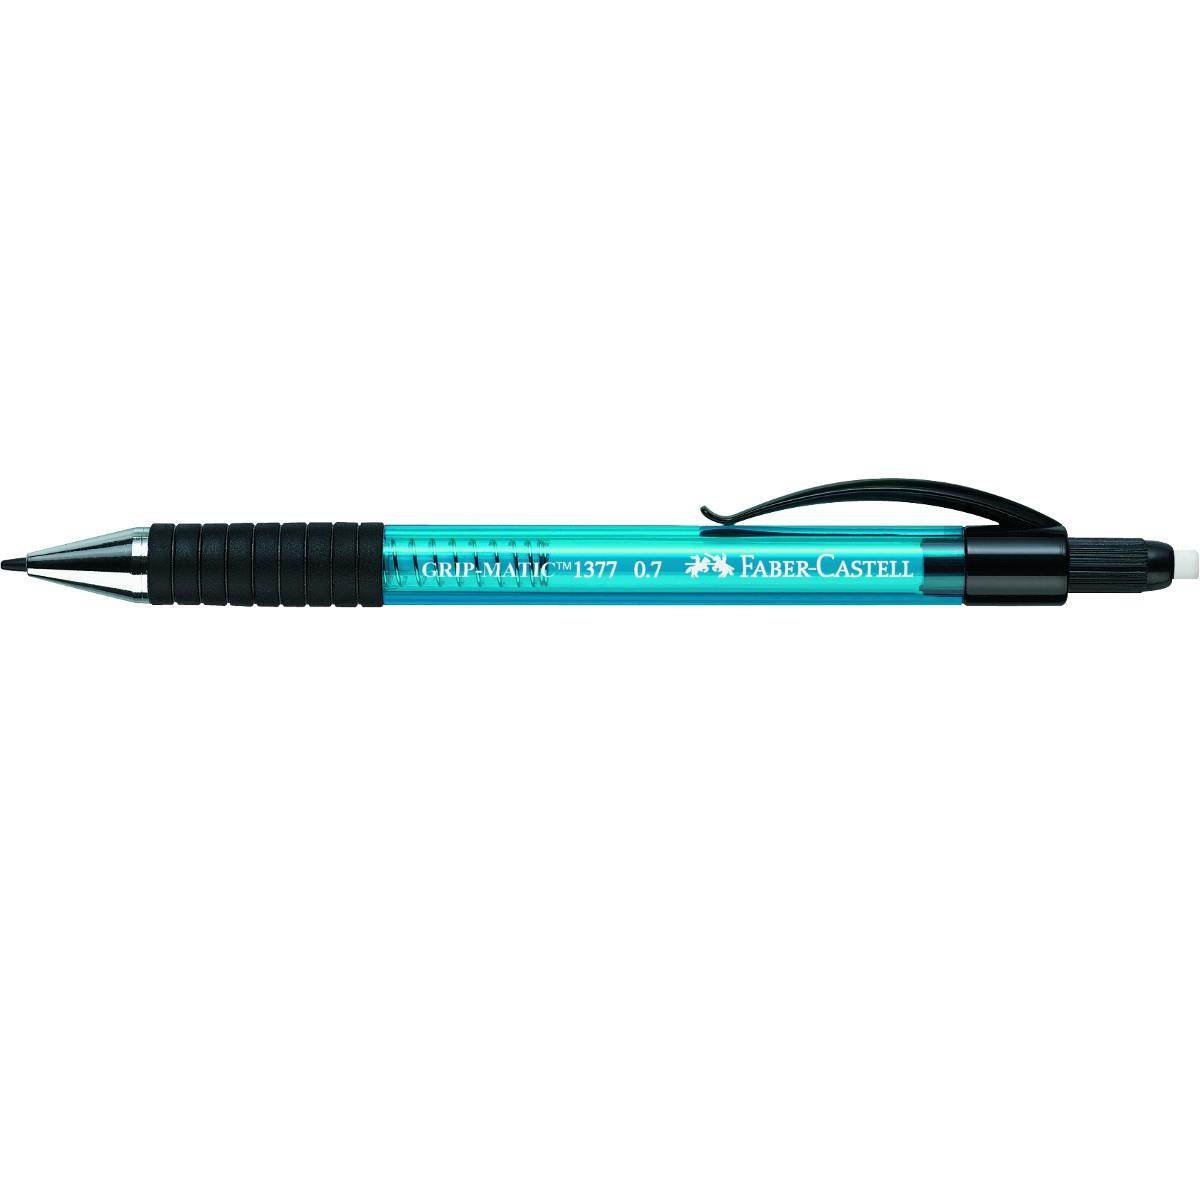 Ołówek automatyczny Faber Castell 1377 Grip Mattic 0.7mm niebieski